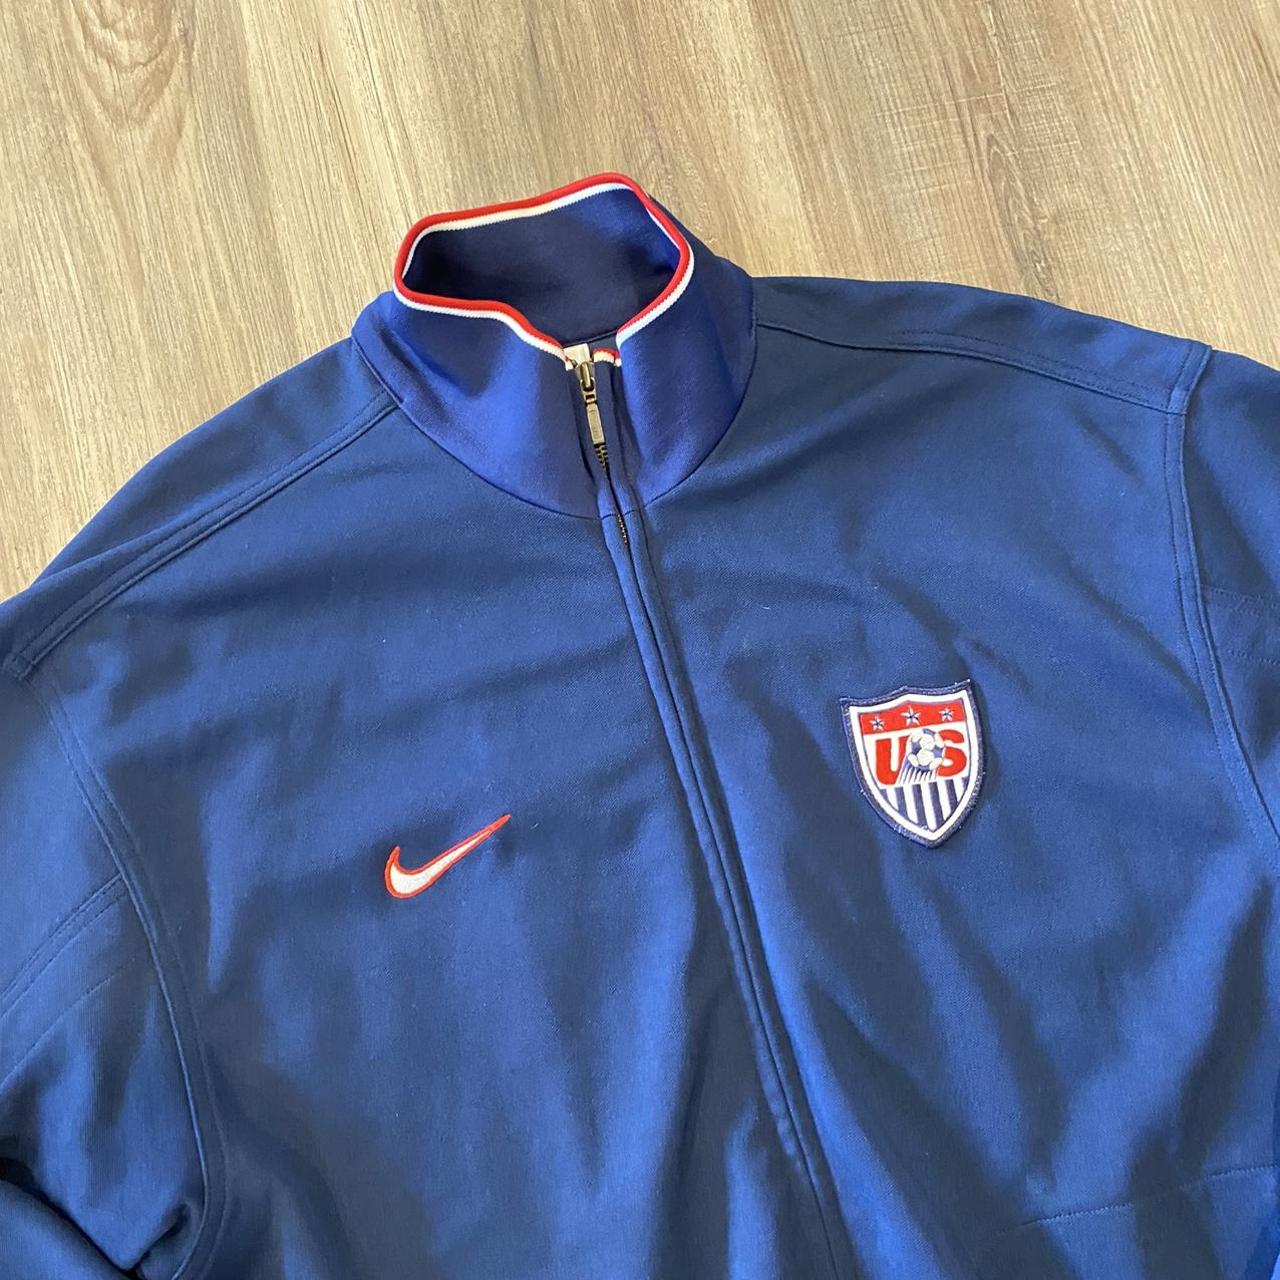 vintage 90s USMNT Nike Soccer jacket in good... - Depop